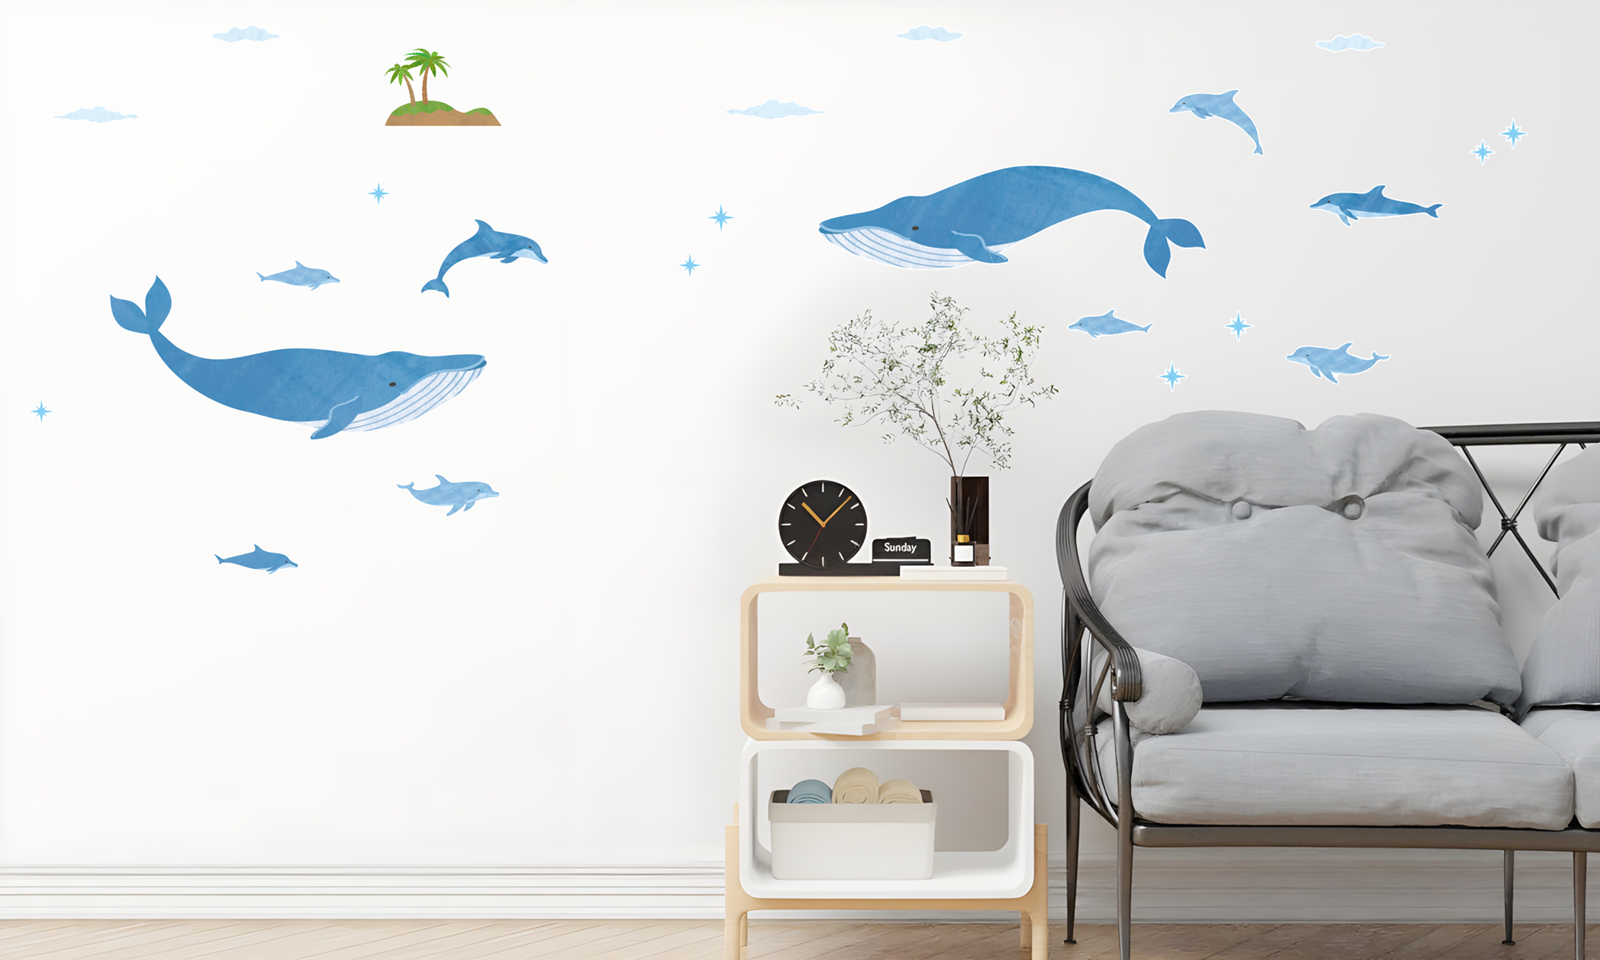 【壁】クジラとイルカの施工イメージ